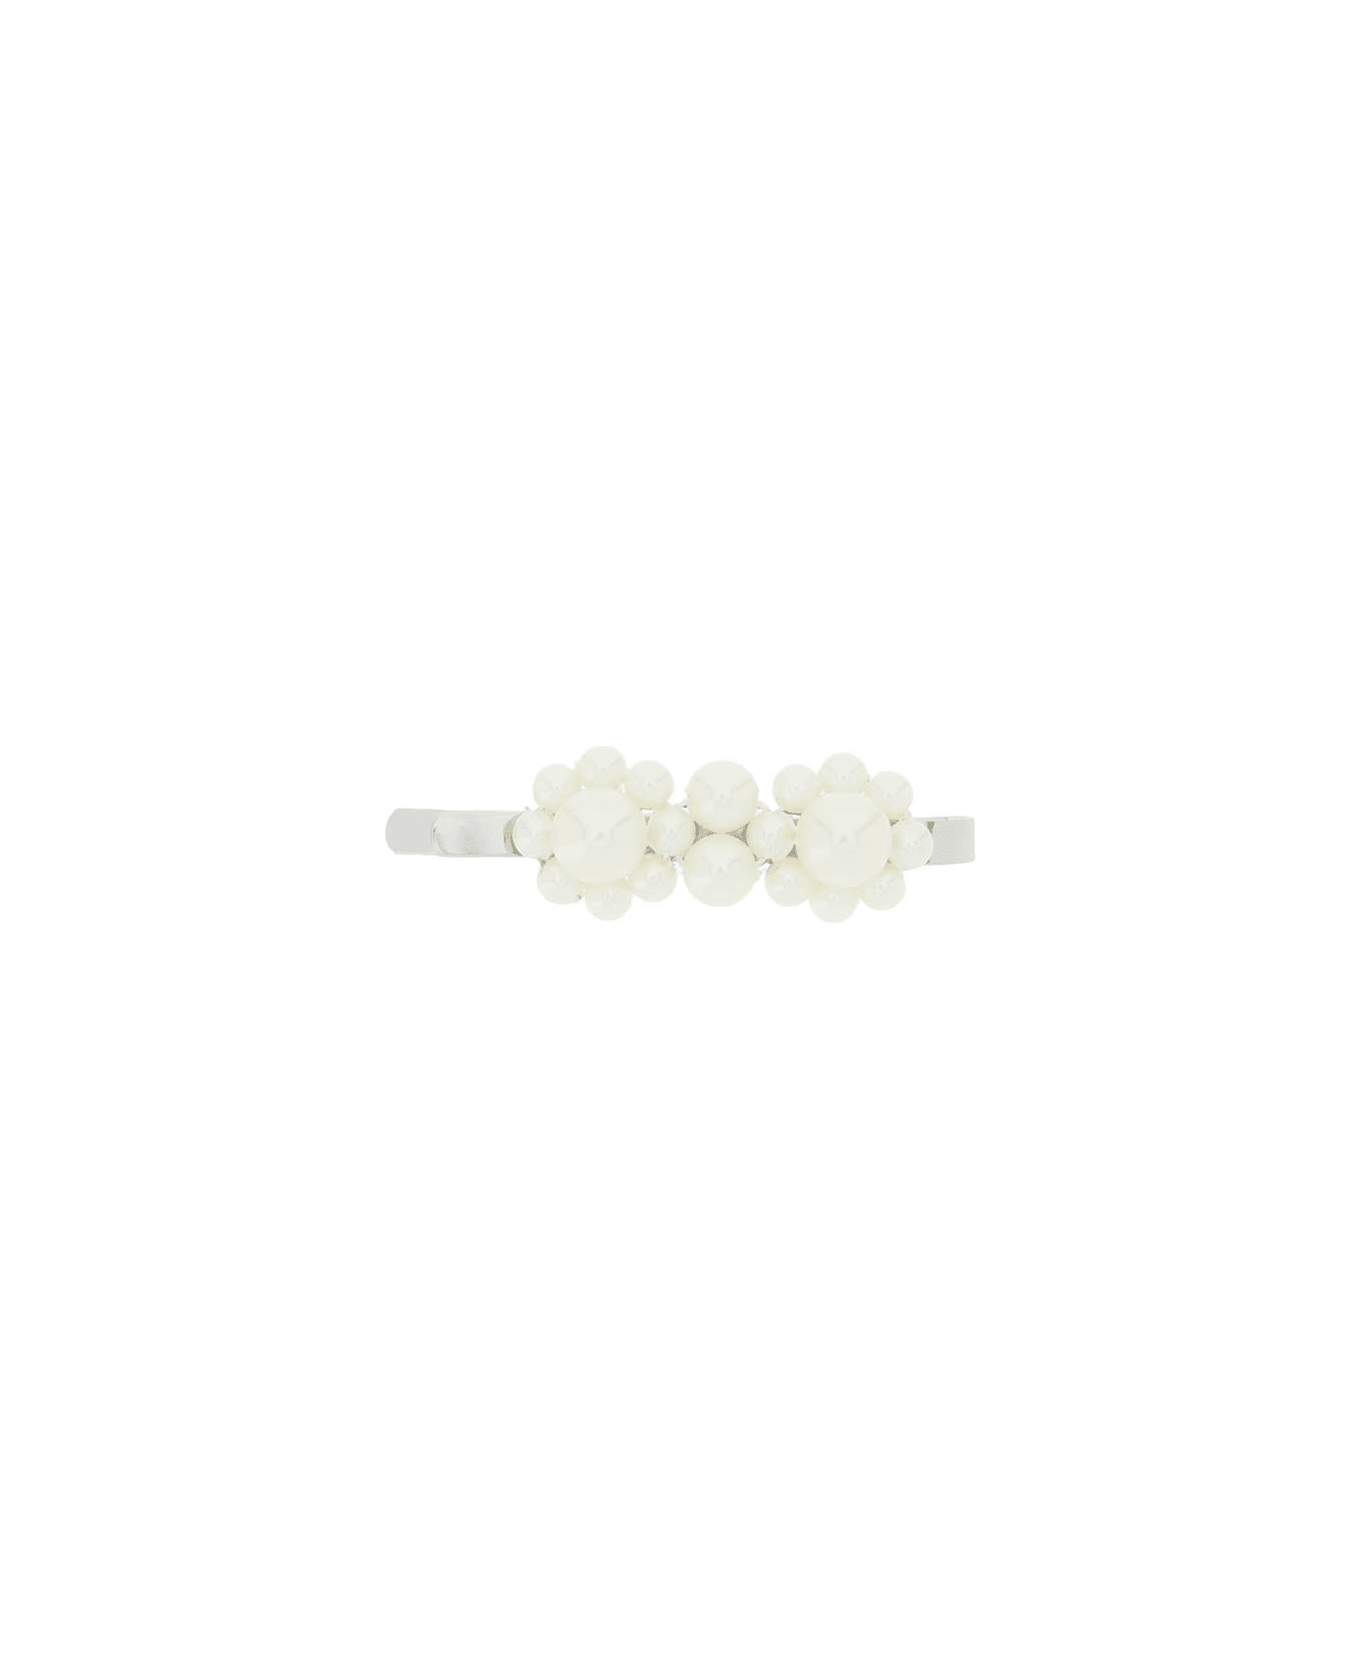 Simone Rocha Mini Flower Hair Clip With Pearls - PEARL (White)